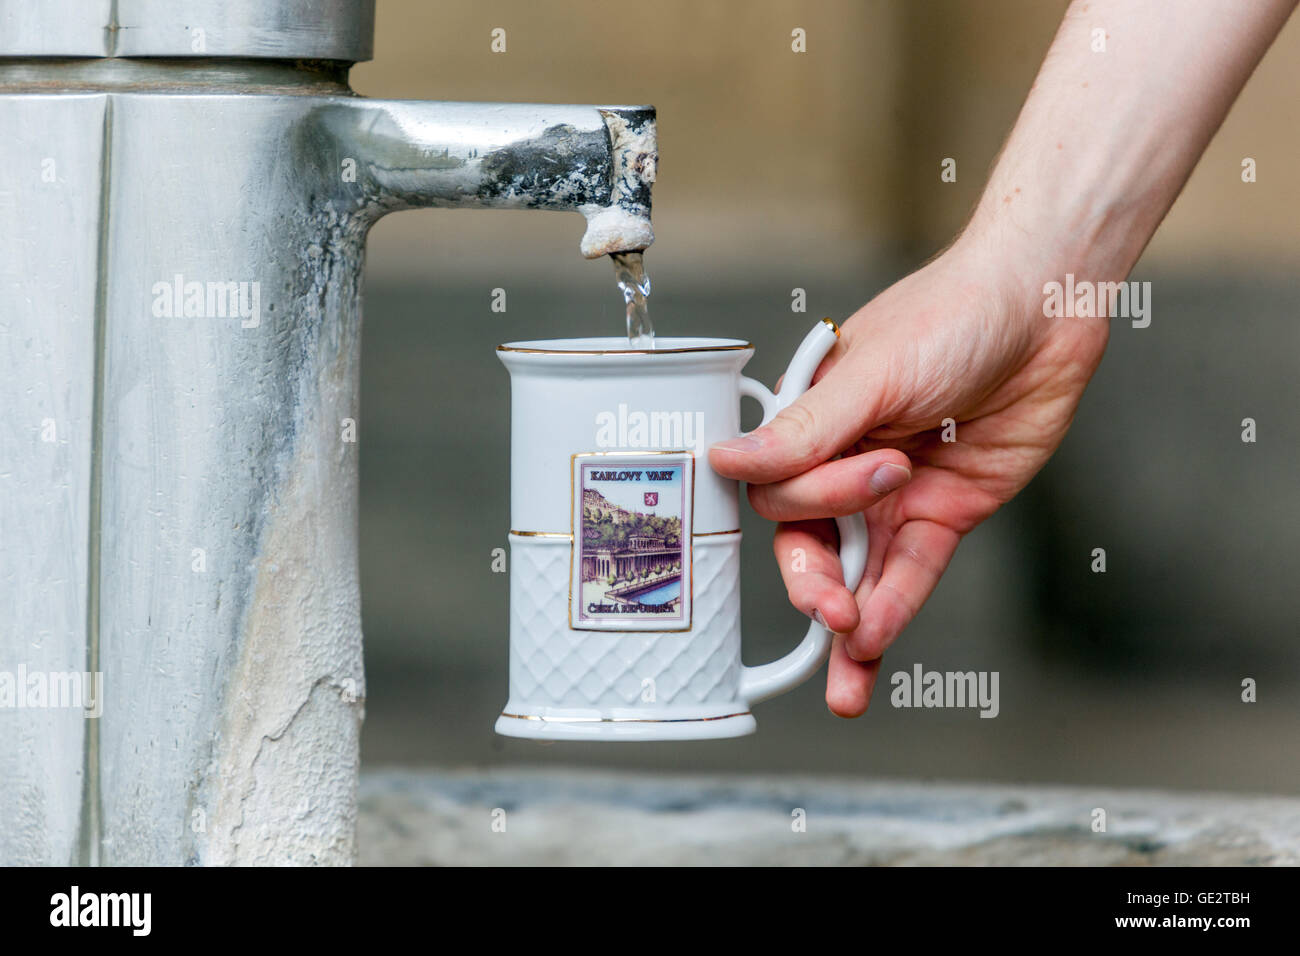 Copa de spa para agua mineral, Karlovy Vary ciudad balneario, Bohemia del Oeste, República Checa Foto de stock